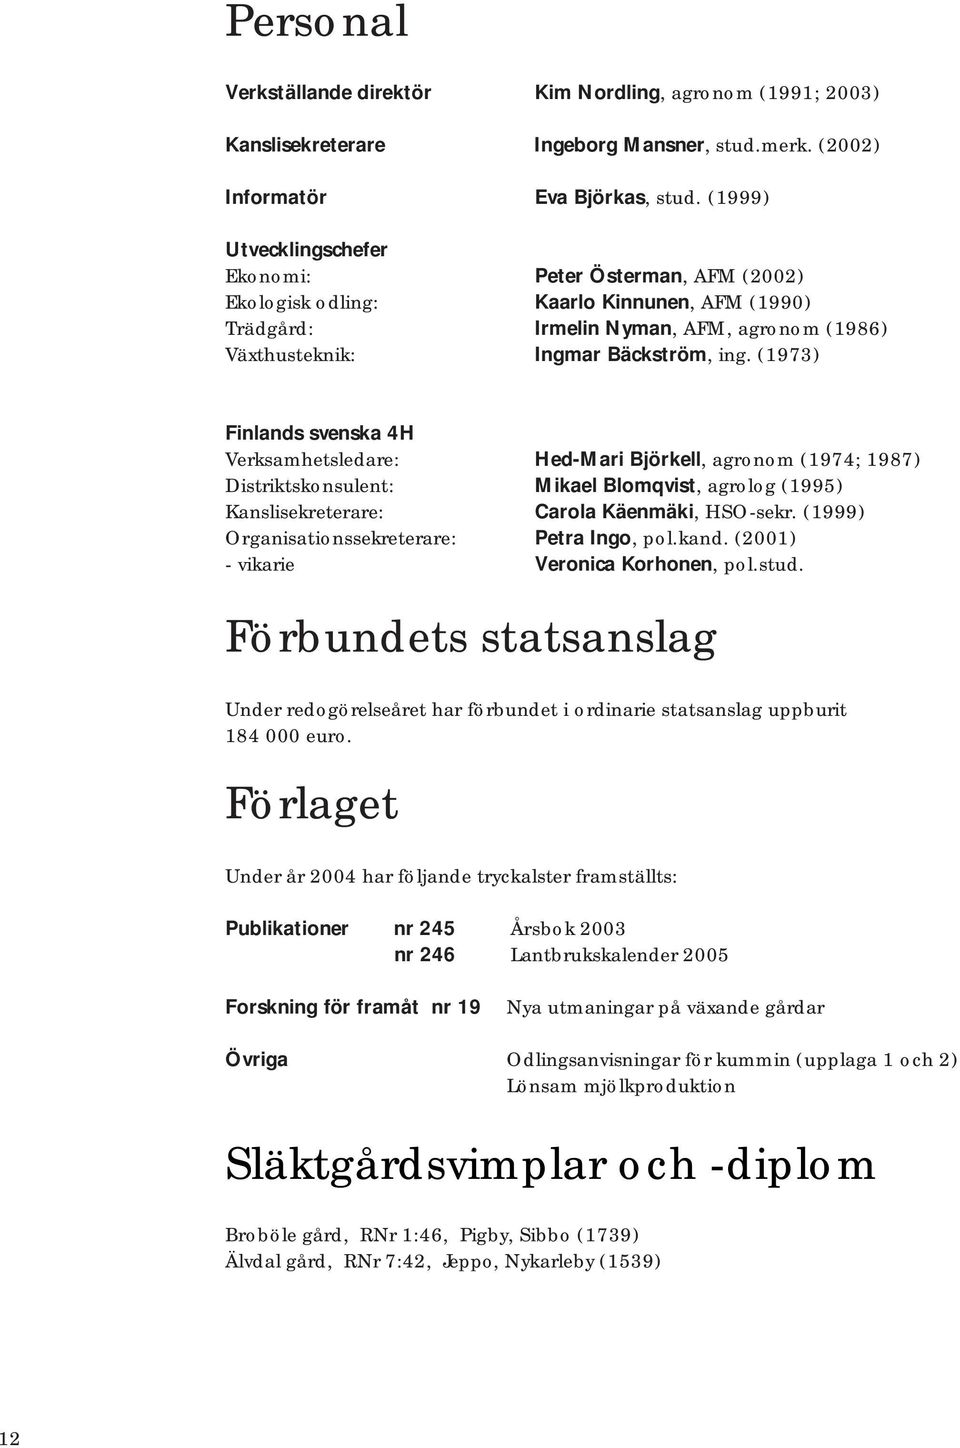 (1973) Finlands svenska 4H Verksamhetsledare: Hed-Mari Björkell, agronom (1974; 1987) Distriktskonsulent: Mikael Blomqvist, agrolog (1995) Kanslisekreterare: Carola Käenmäki, HSO-sekr.